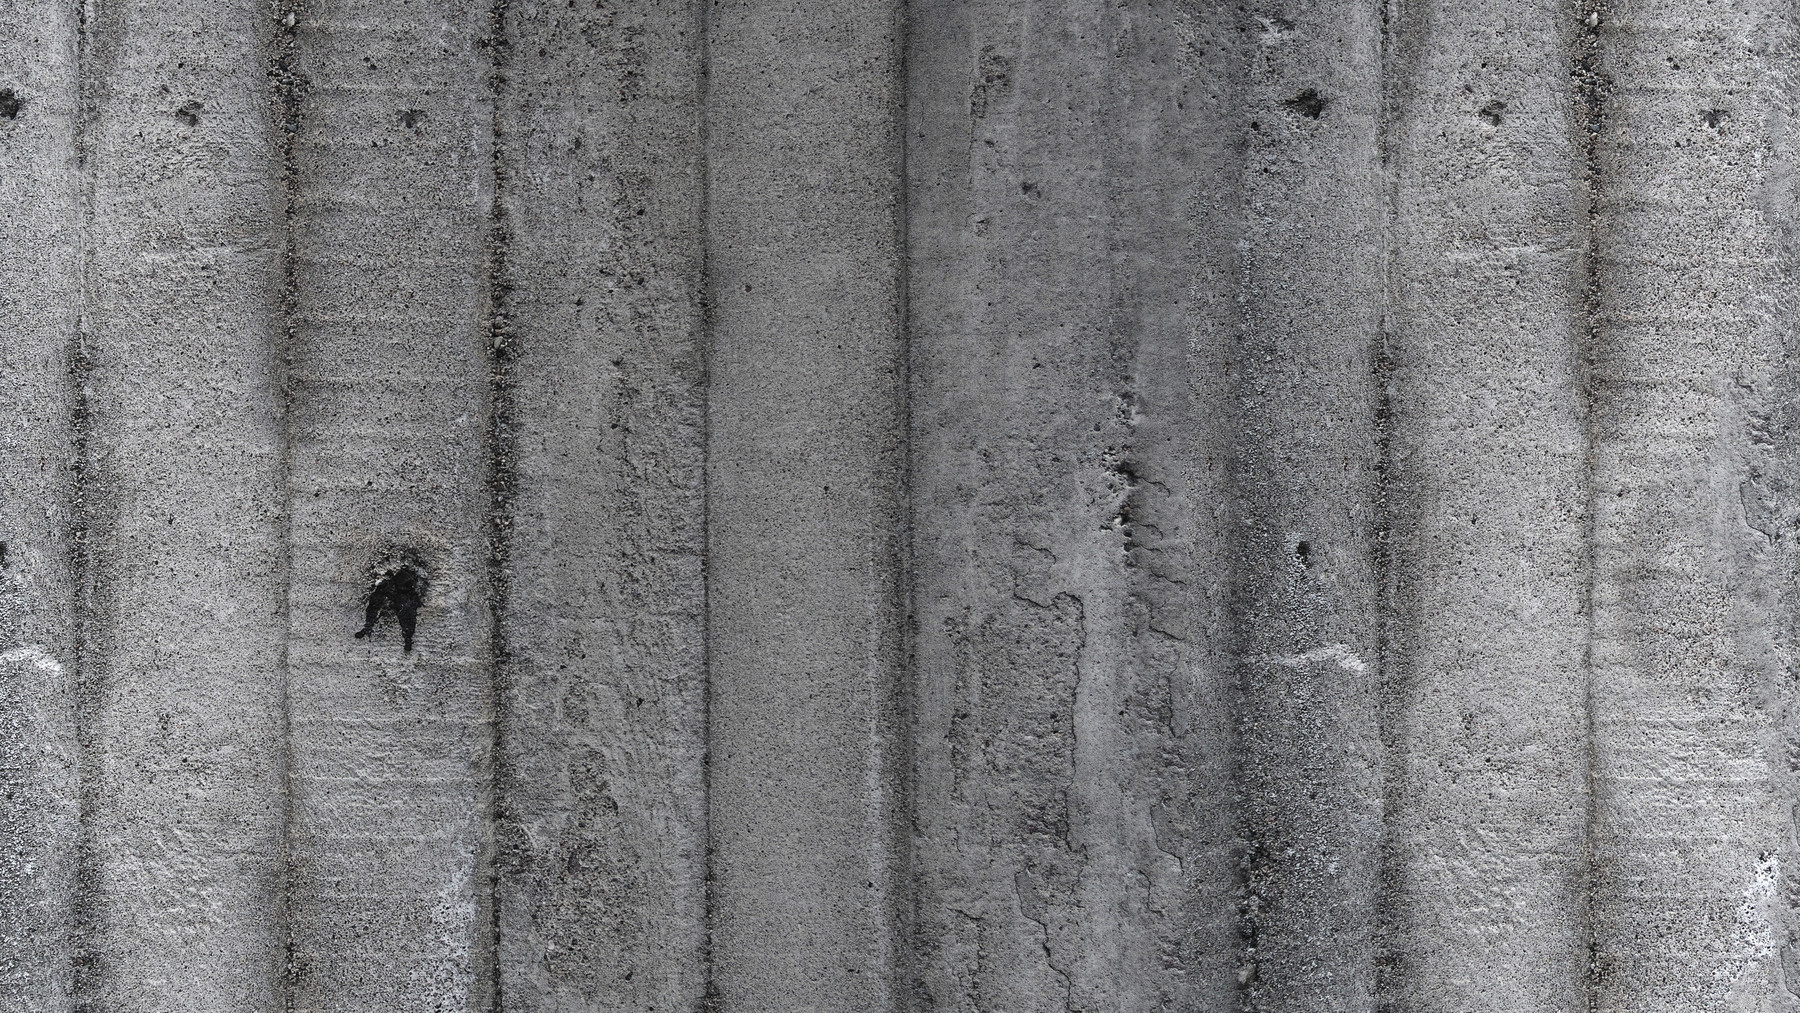 Juuso Voutilainen Pbr Striped Concrete 1 8k Seamless Texture 5 Variations